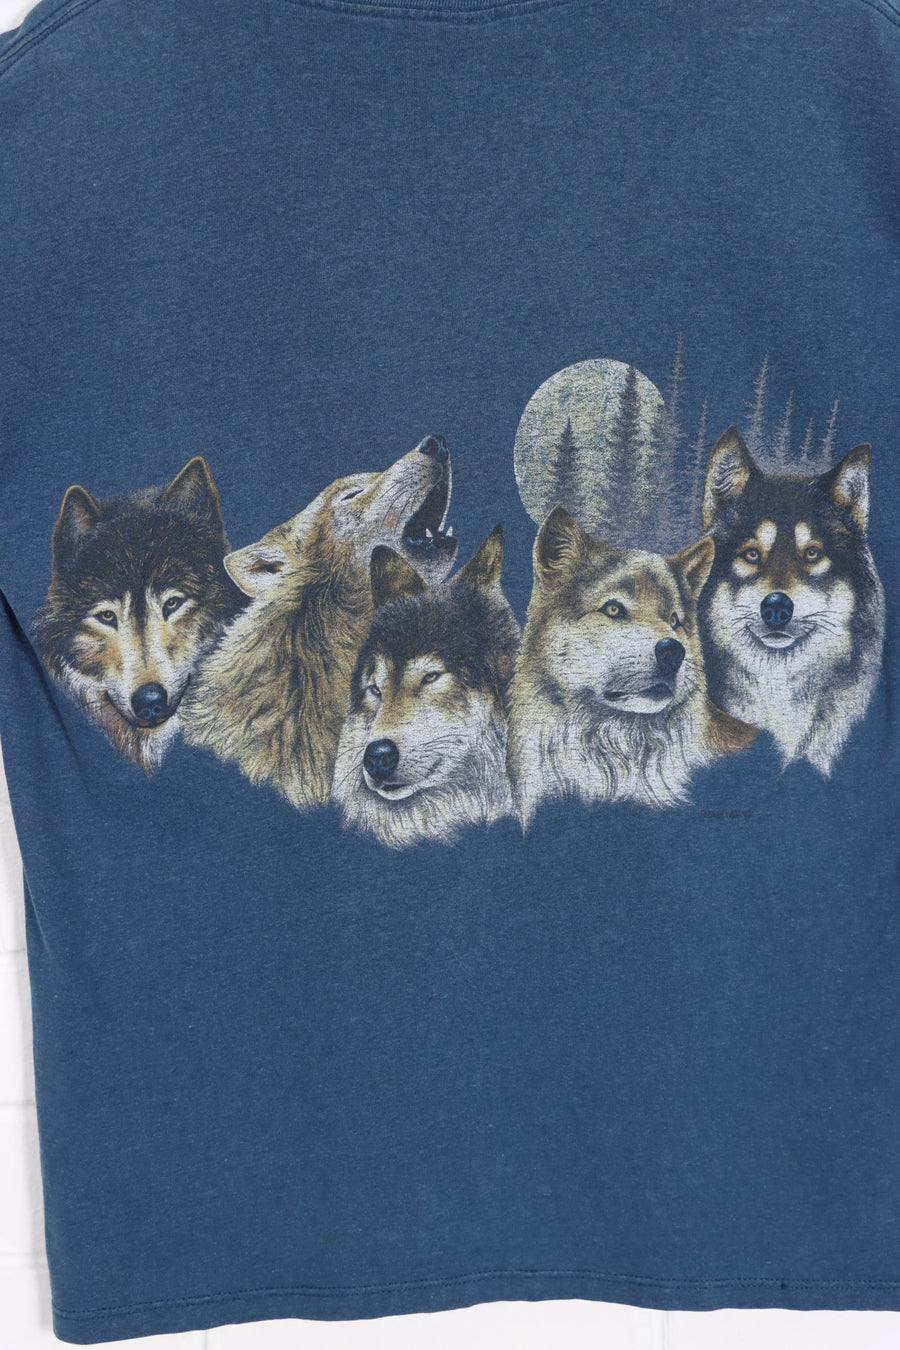 HABITAT 1992 Wolves & Moon Front Back Single Stitch T-Shirt (L) - Vintage Sole Melbourne